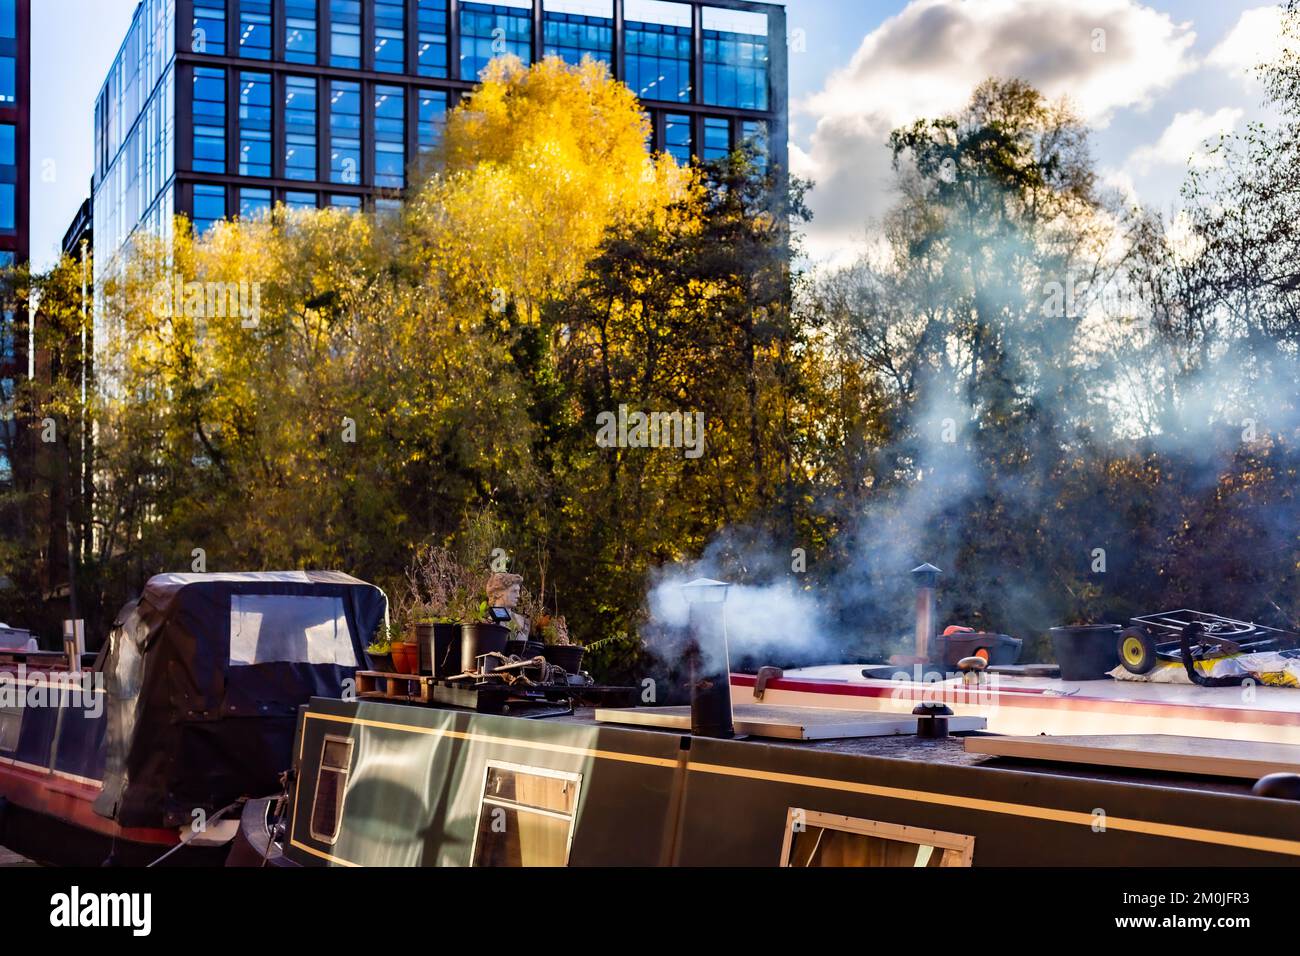 Kanalboote, die auf dem Kanal bei King's Cross festgemacht sind. Zwei Kanalboote, die mit starker Seitenbeleuchtung fotografiert wurden. Ein Boot hat einen Kamintrichter, der raucht. Stockfoto